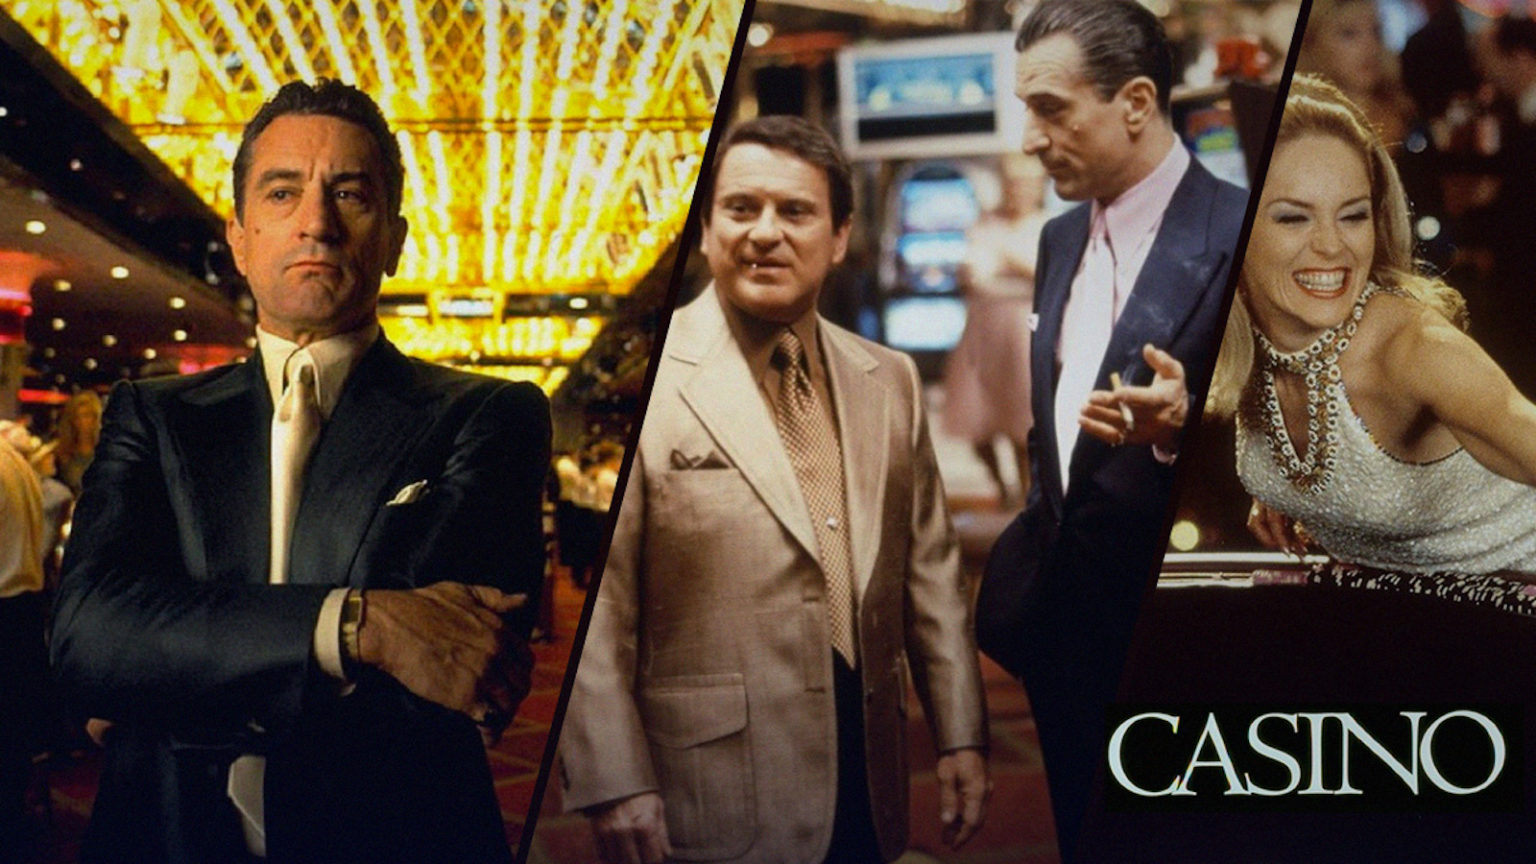 casino movie free online